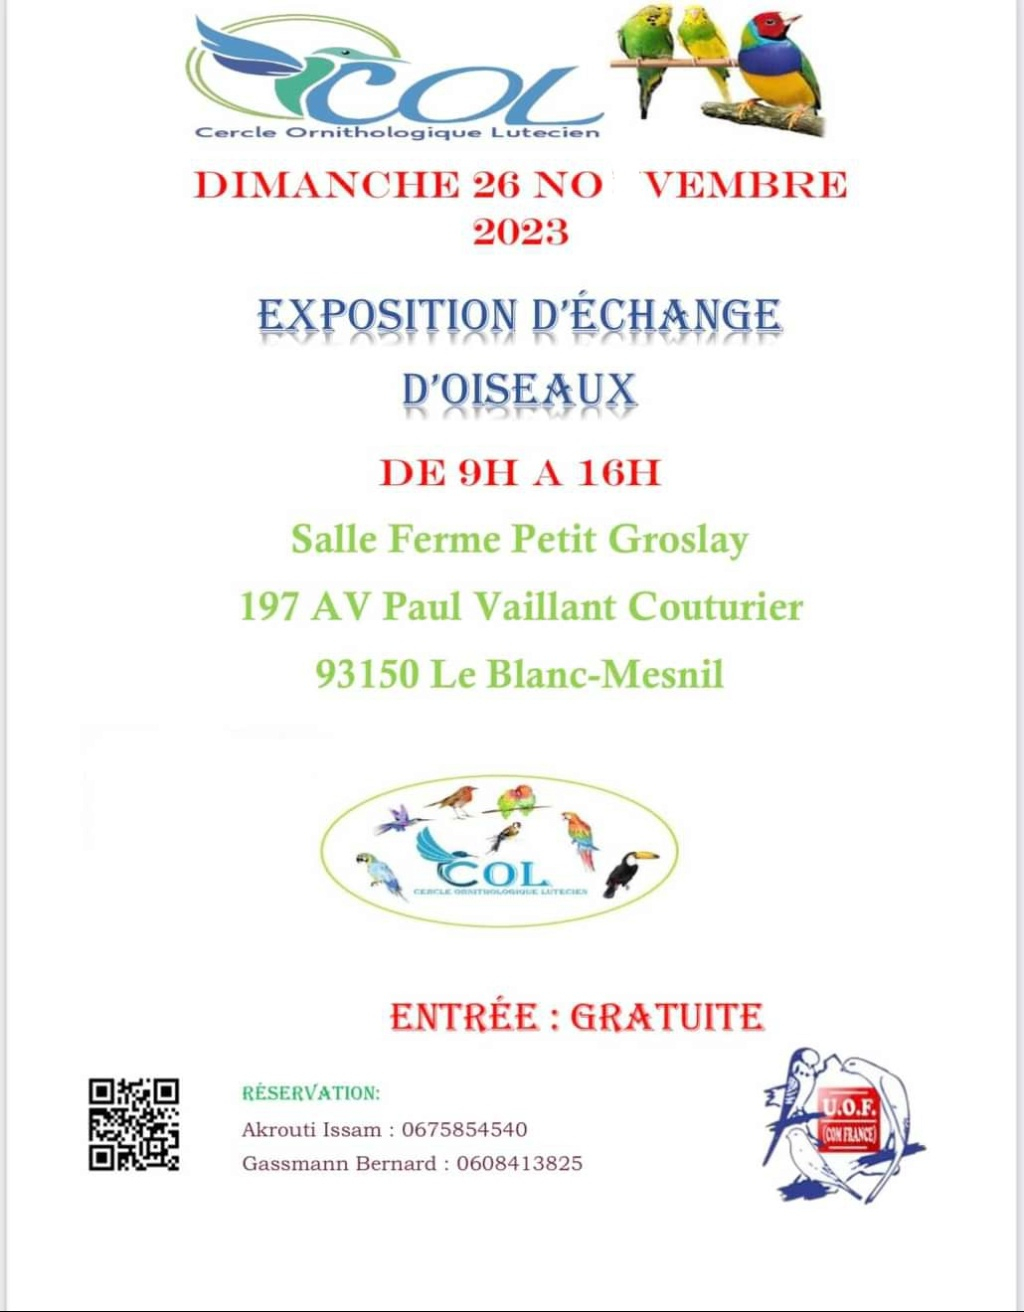 Le Blanc-Mesnil (93) - (Exposition d'échange d'oiseaux) 20231111